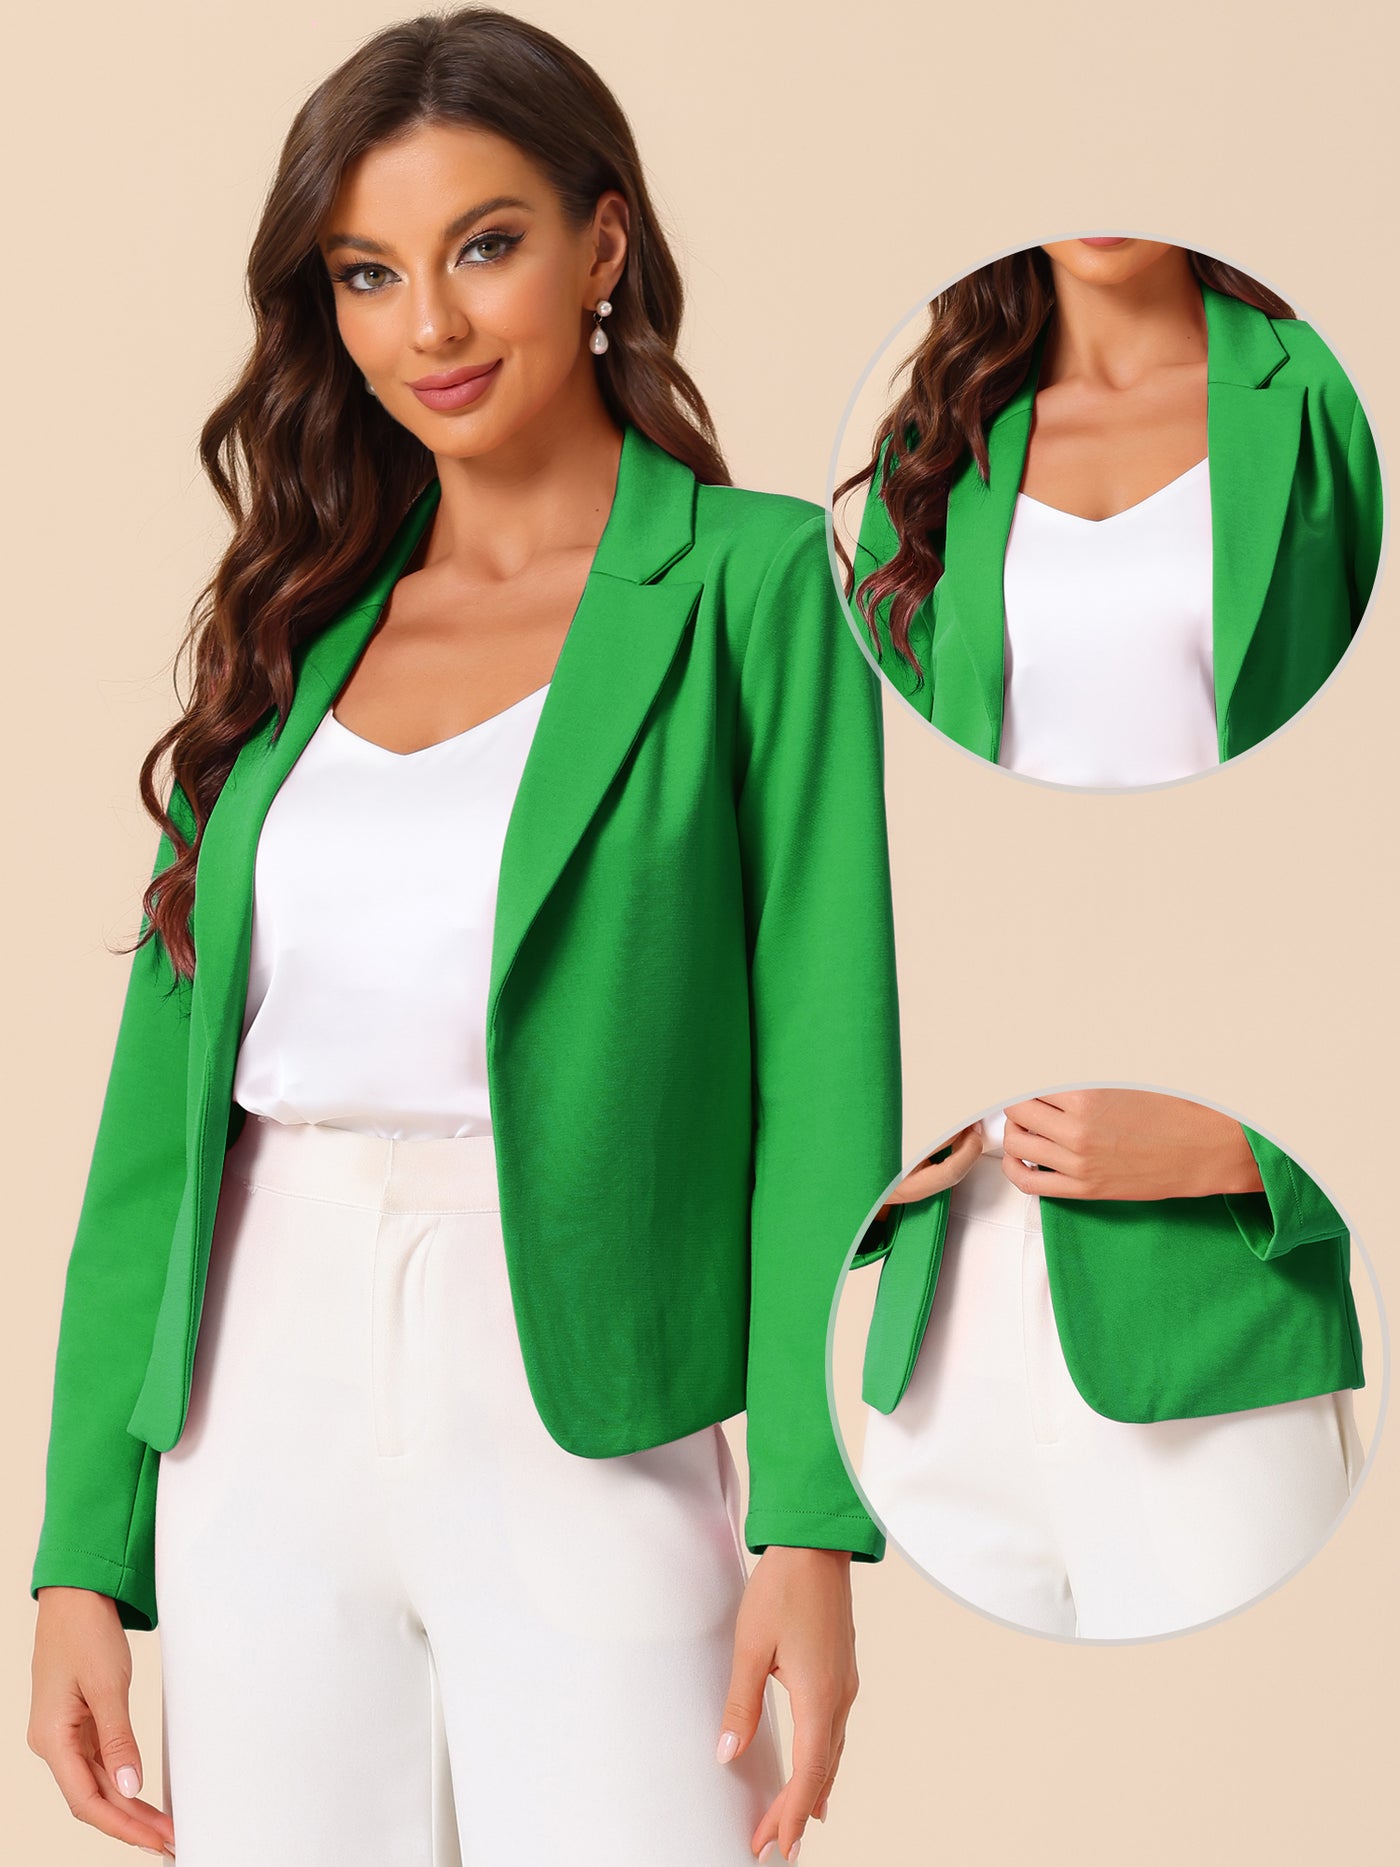 Allegra K Business Blazer for Women's Open Front Office Casual Work Crop Suit Jacket